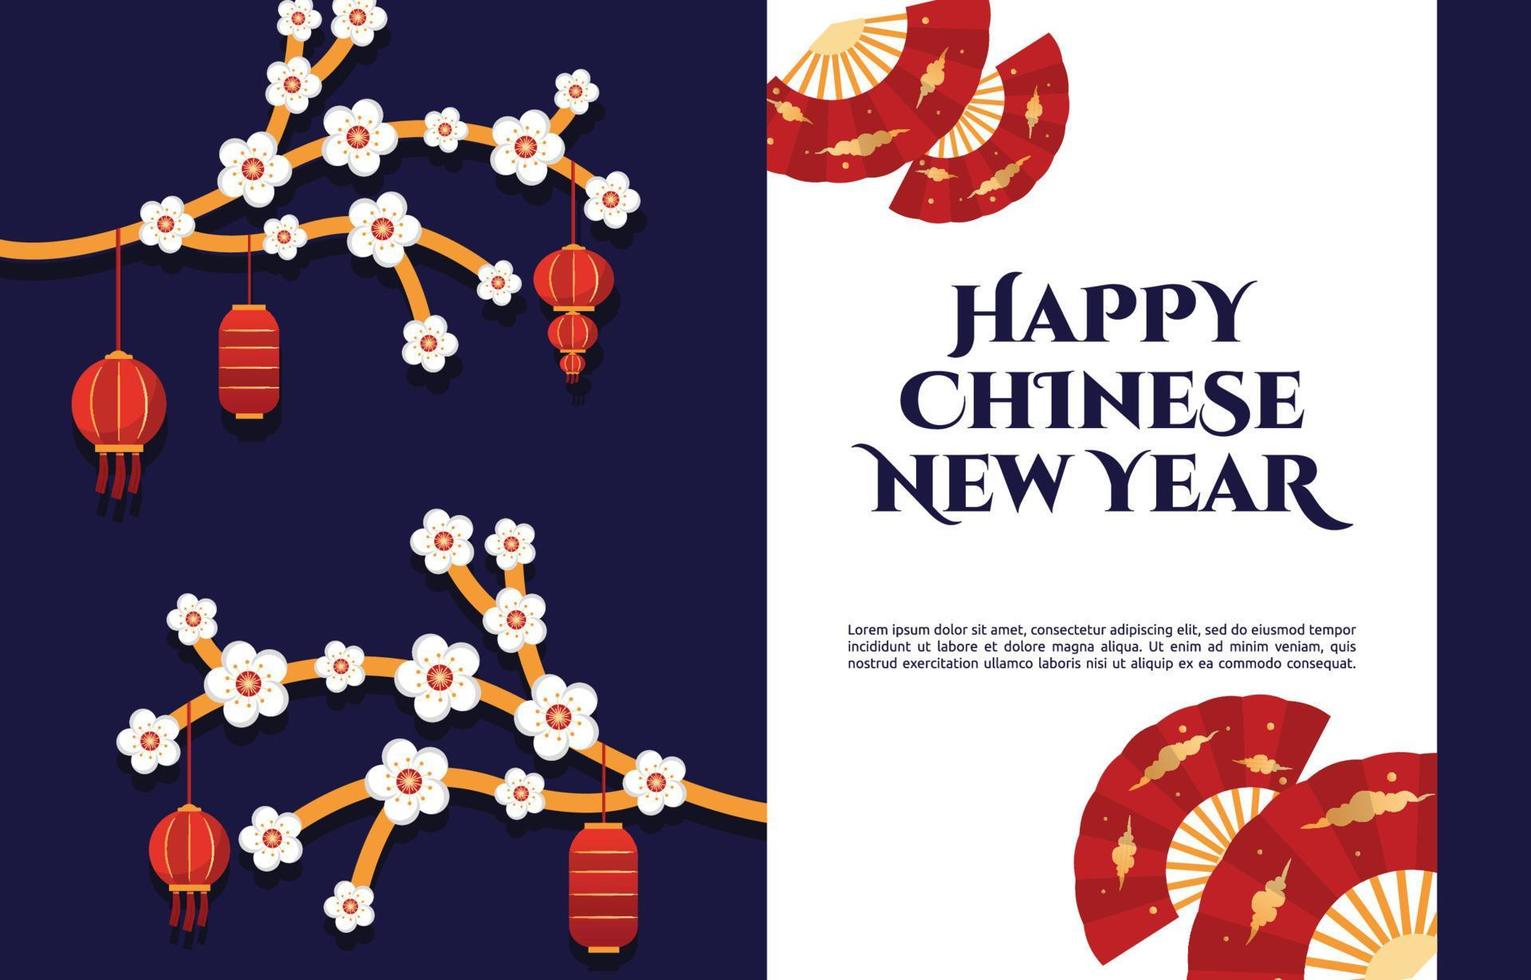 flor linterna ventilador feliz año nuevo chino celebración azul tarjeta de felicitación vector